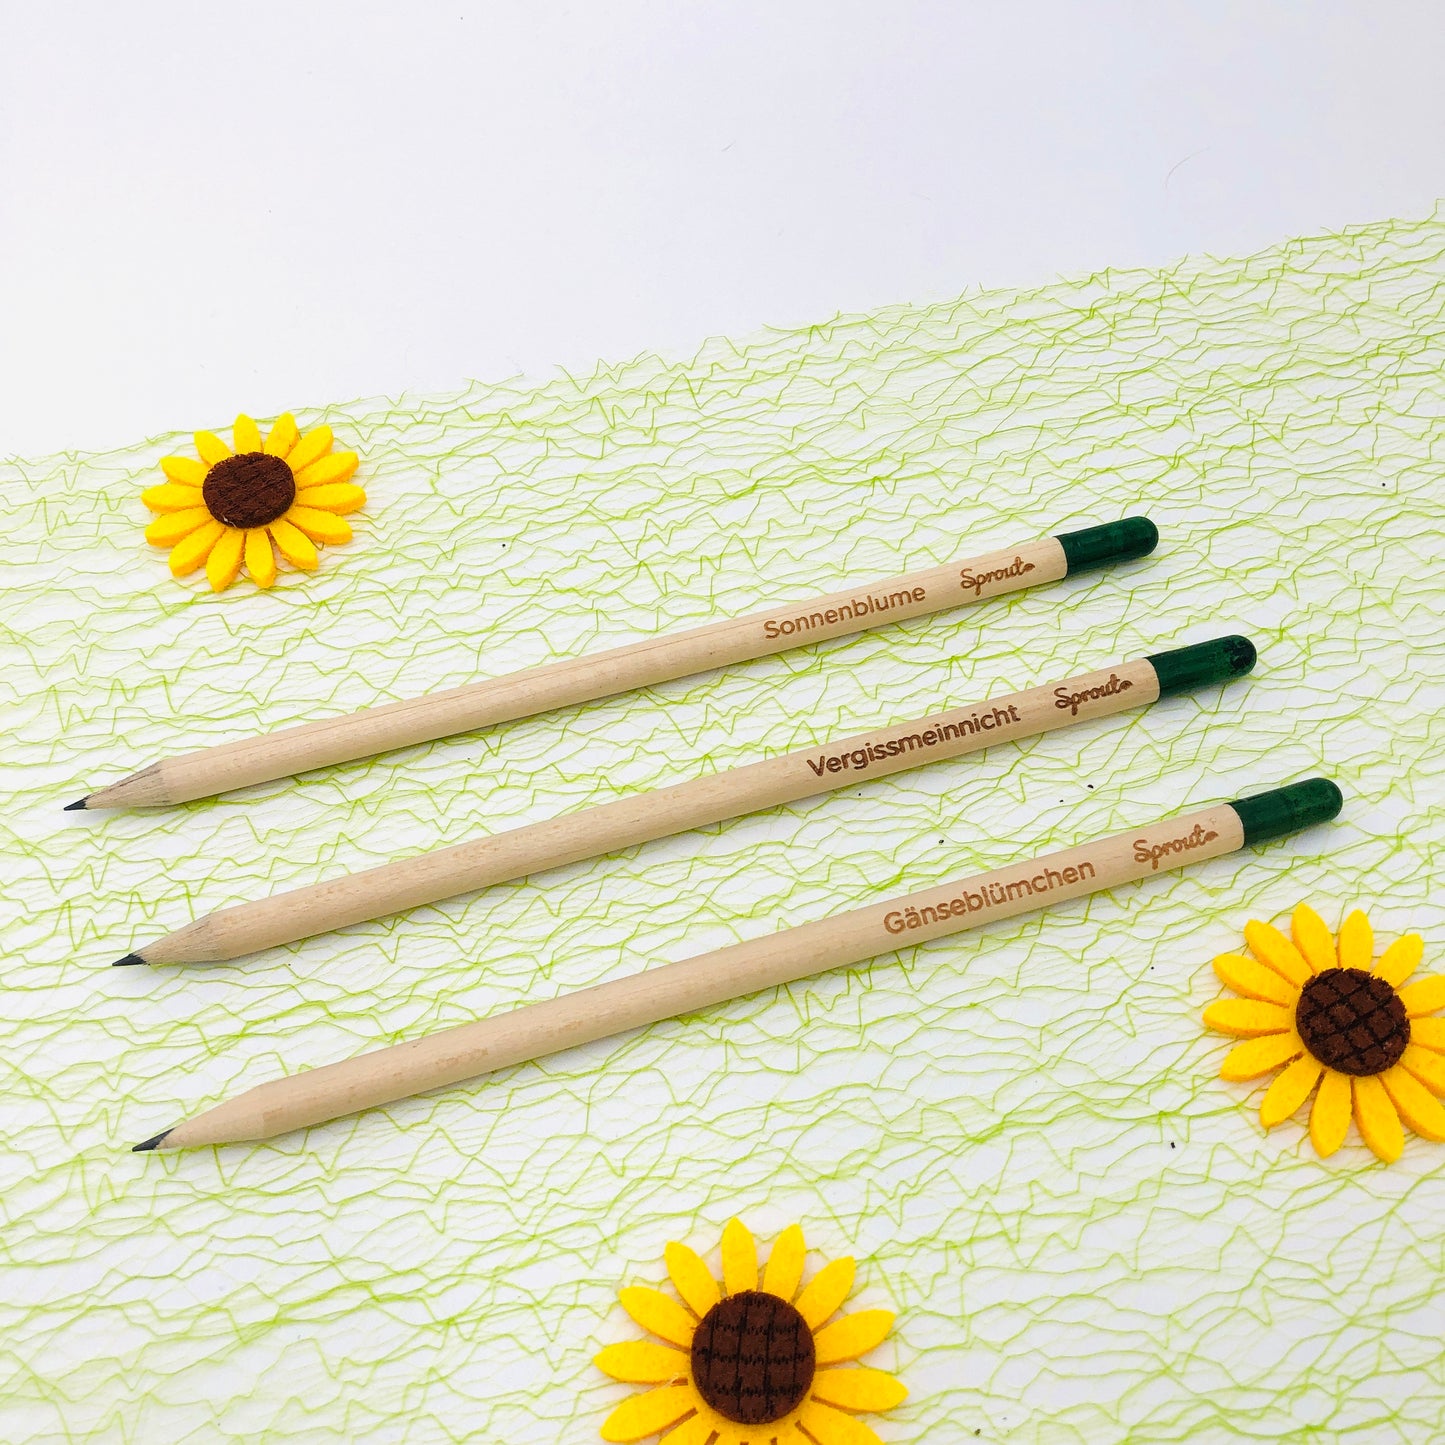 Samenbleistift als kleines Geschenk - Nachhaltiges kleines Geschenk zum Danke sagen - Bleistift zum Einpflanzen - Holzstift mit Blumensamen